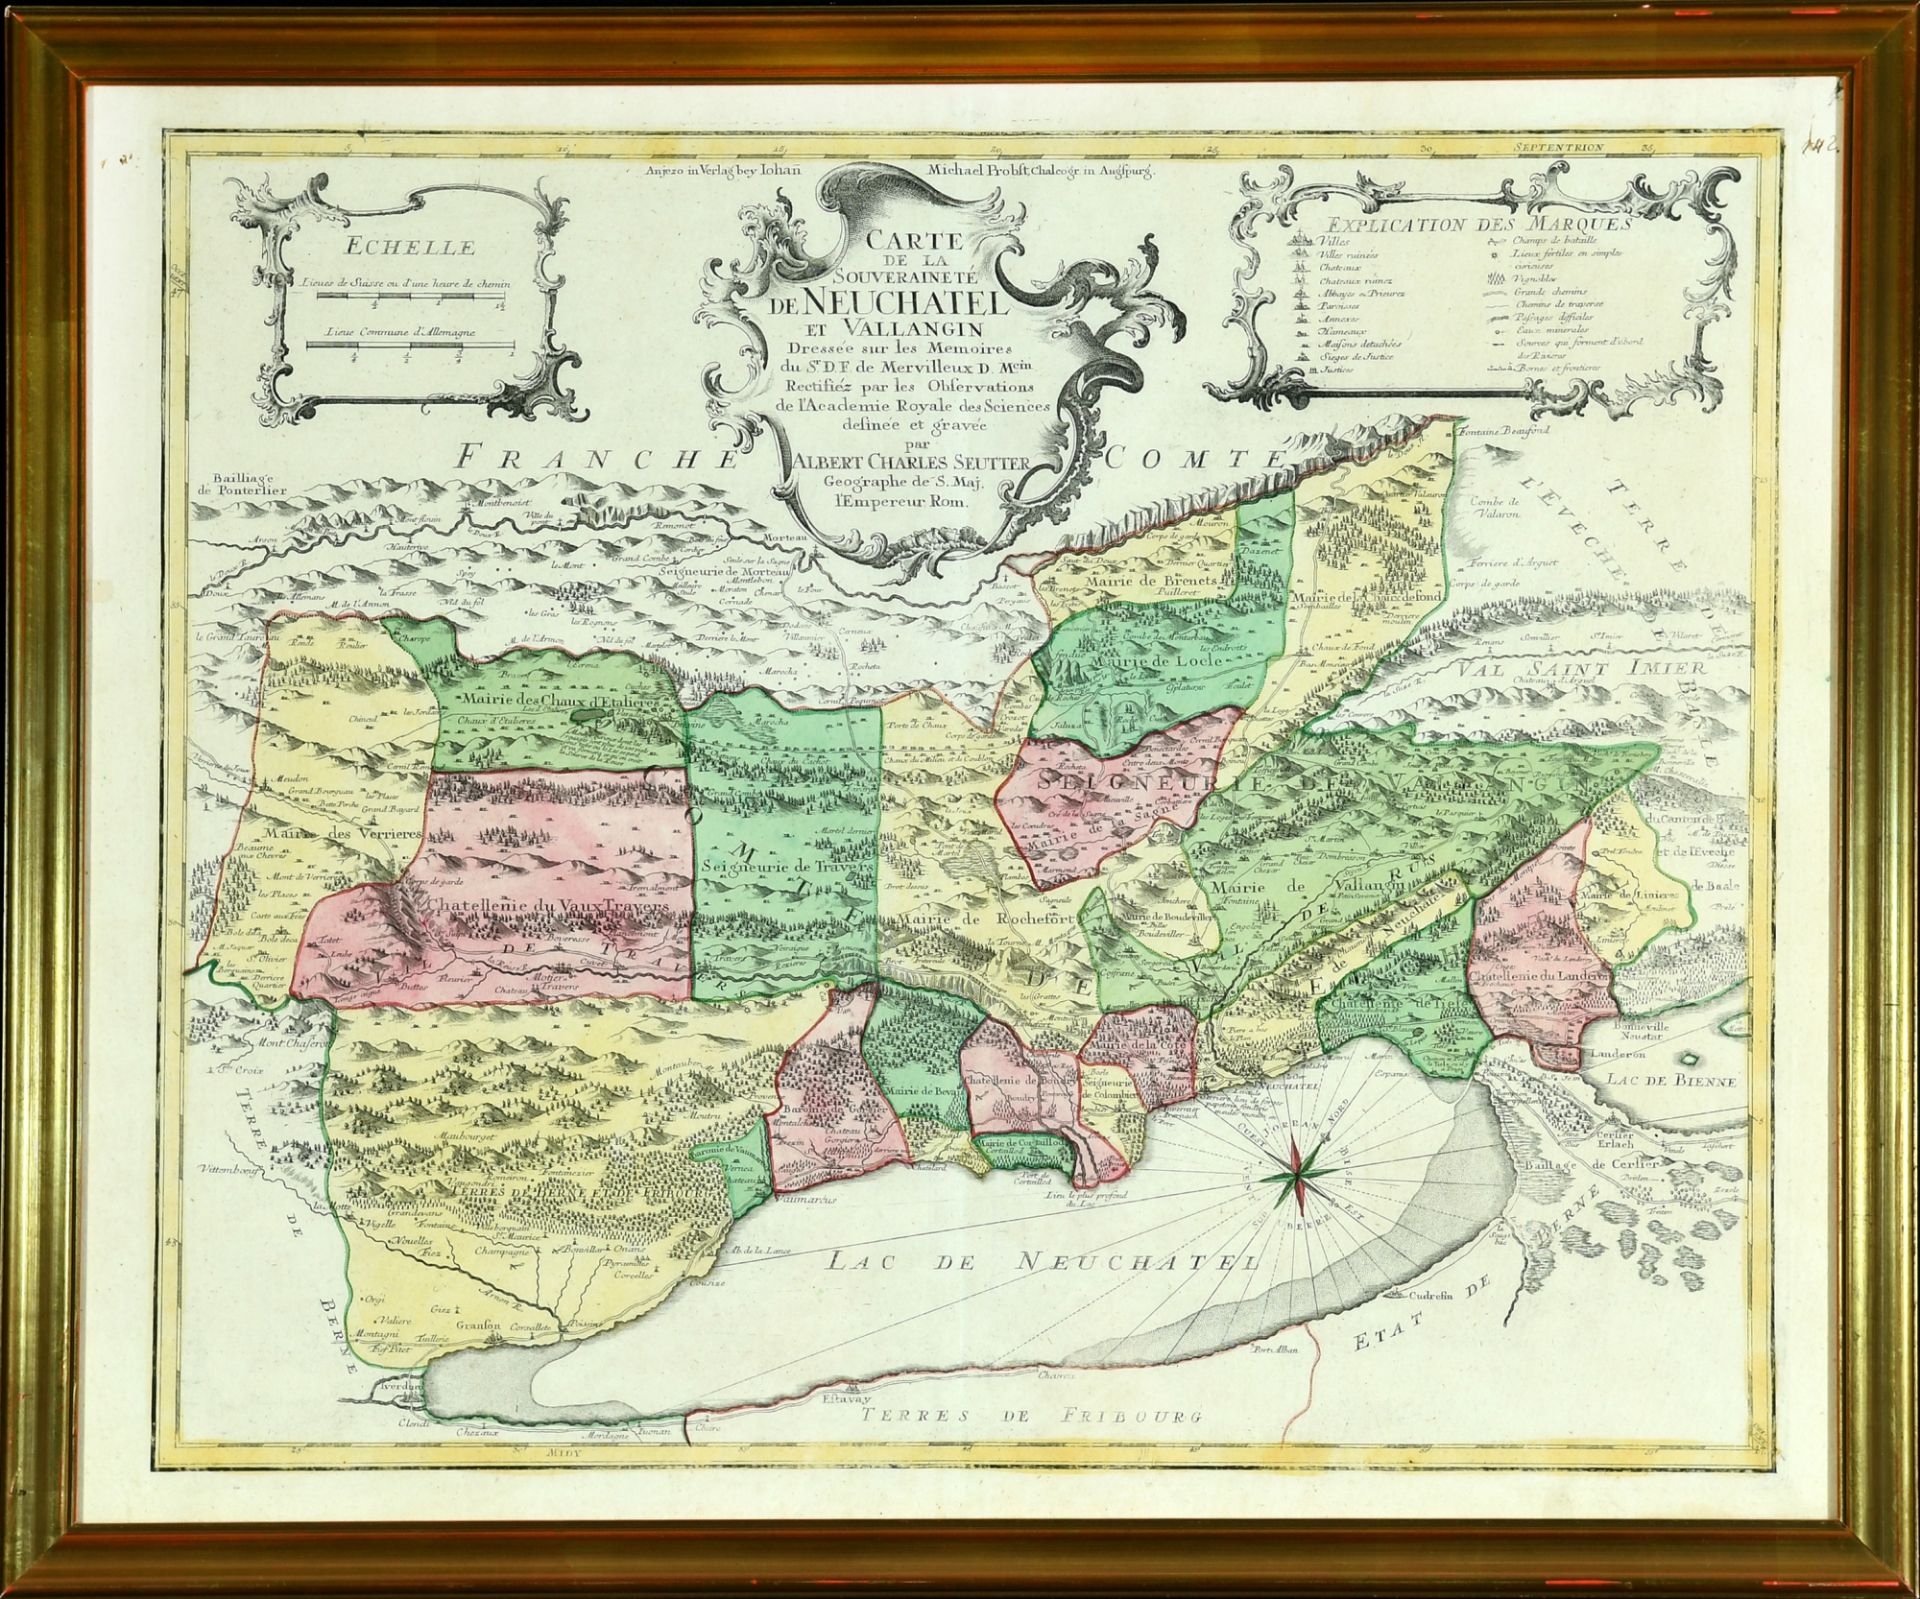 Landkarte "Carte de la souveraineté de Neuchatel et Vallangin"